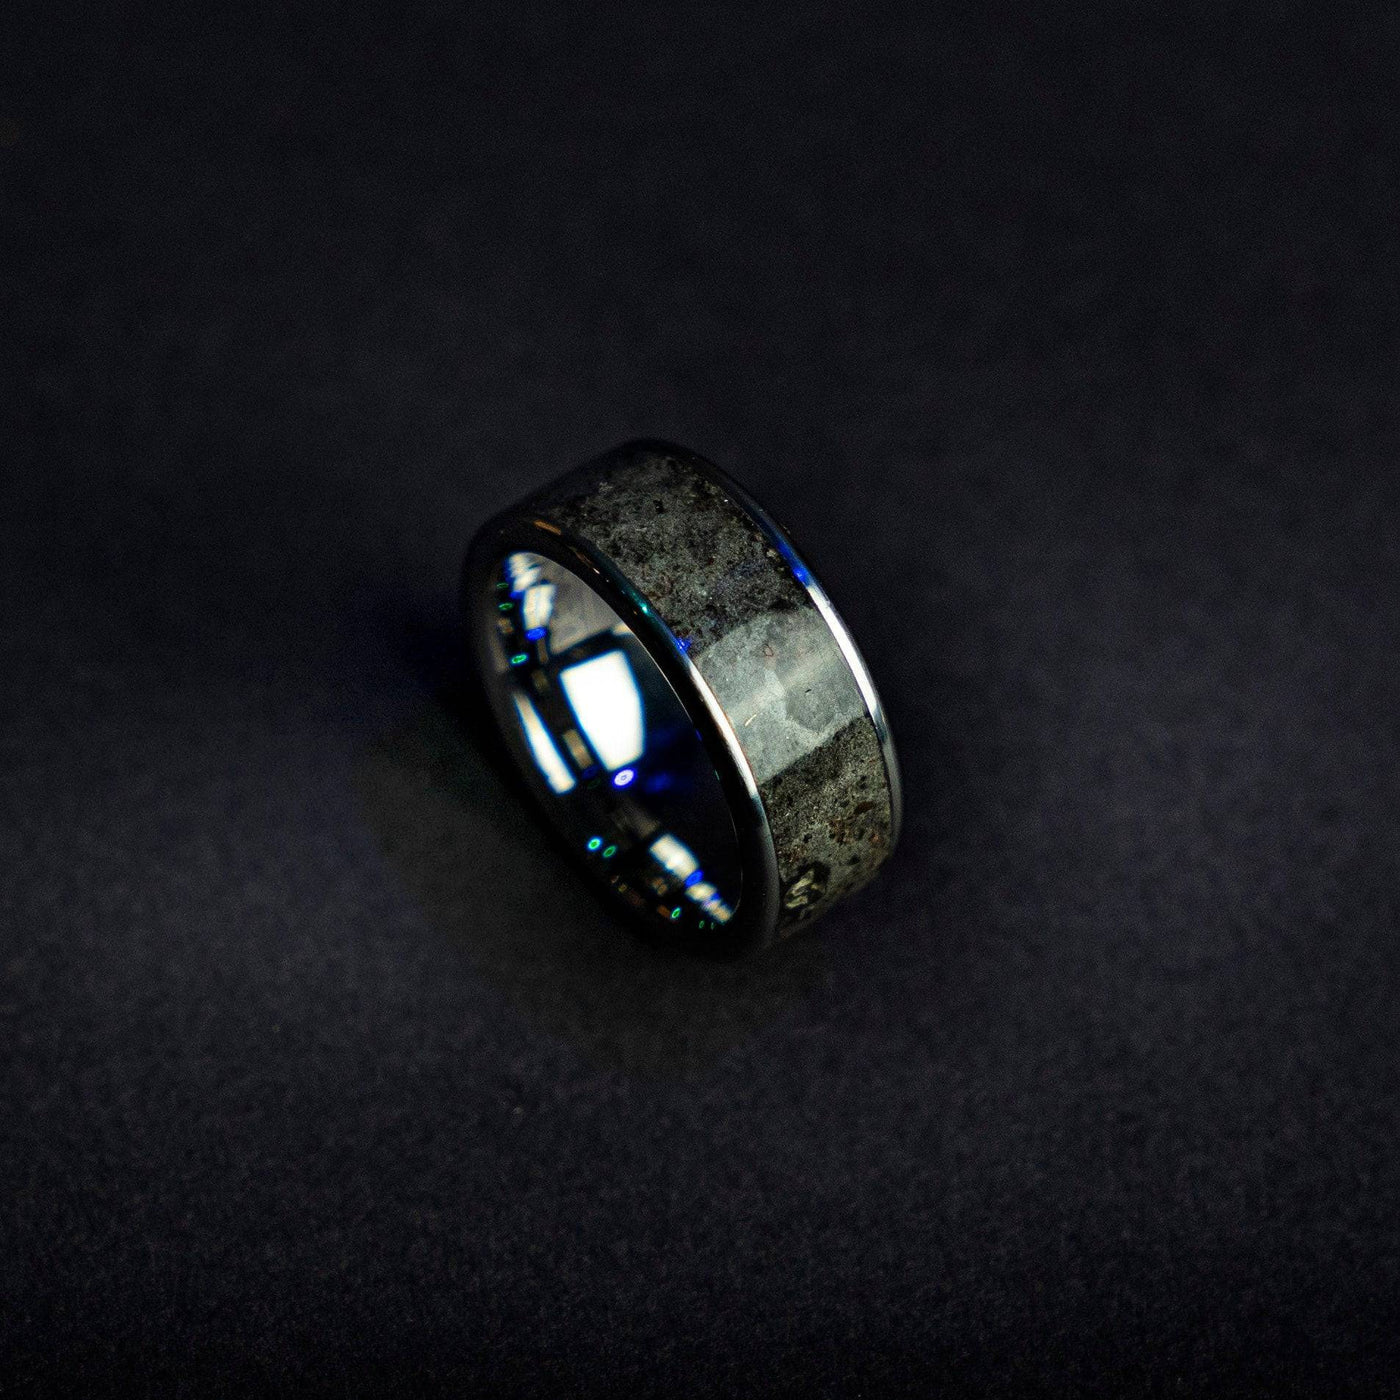 Lunar Meteorite Ring with Genuine Moon Dust